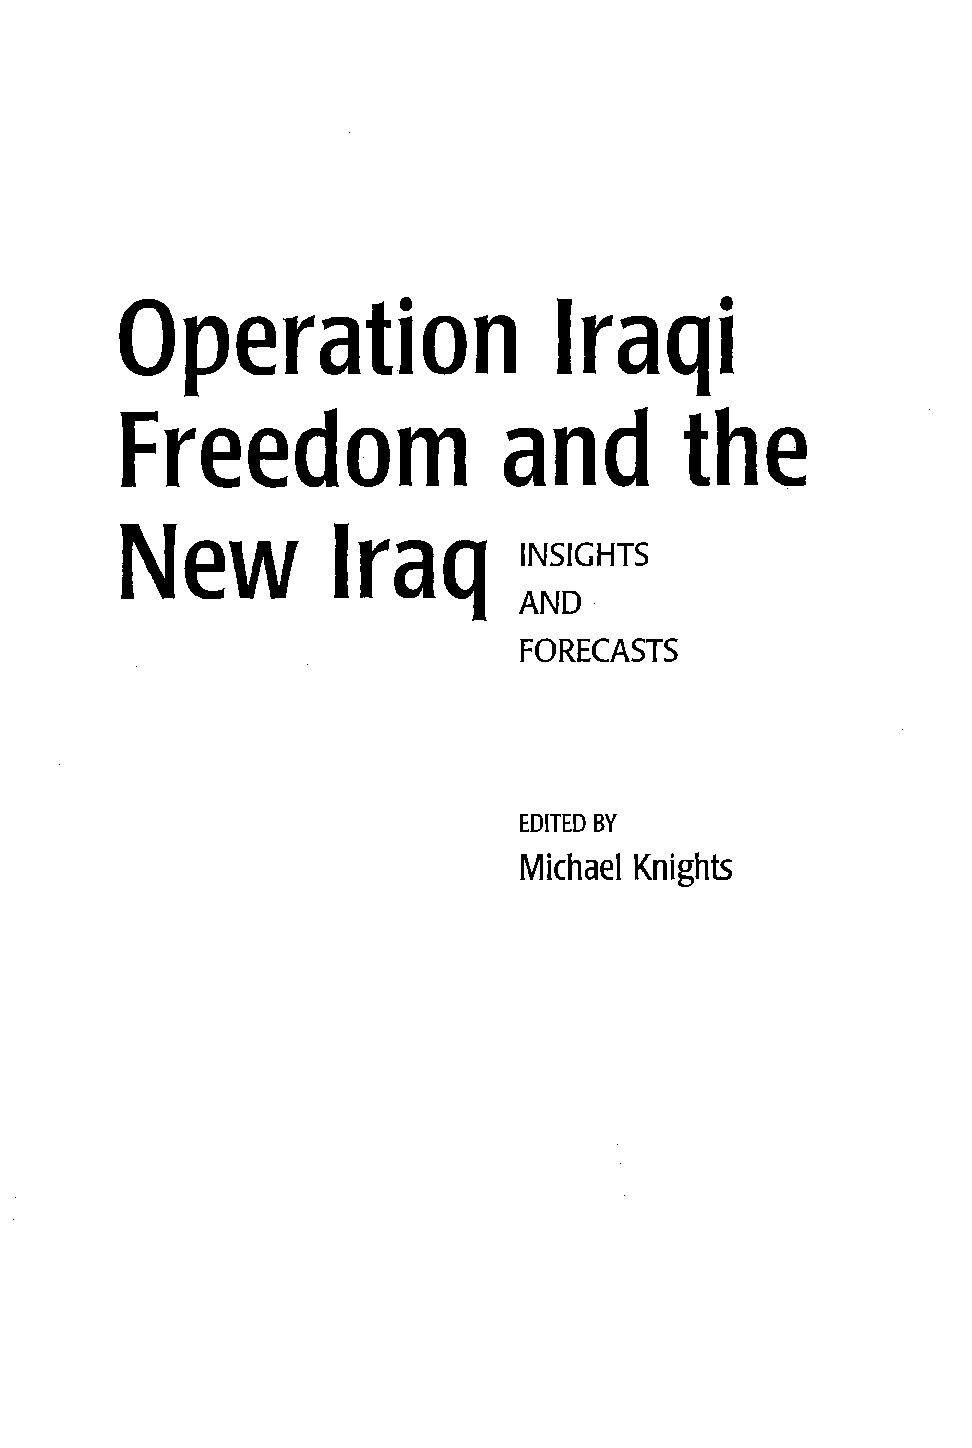 OperationIraqiFreedom.pdf.pdf